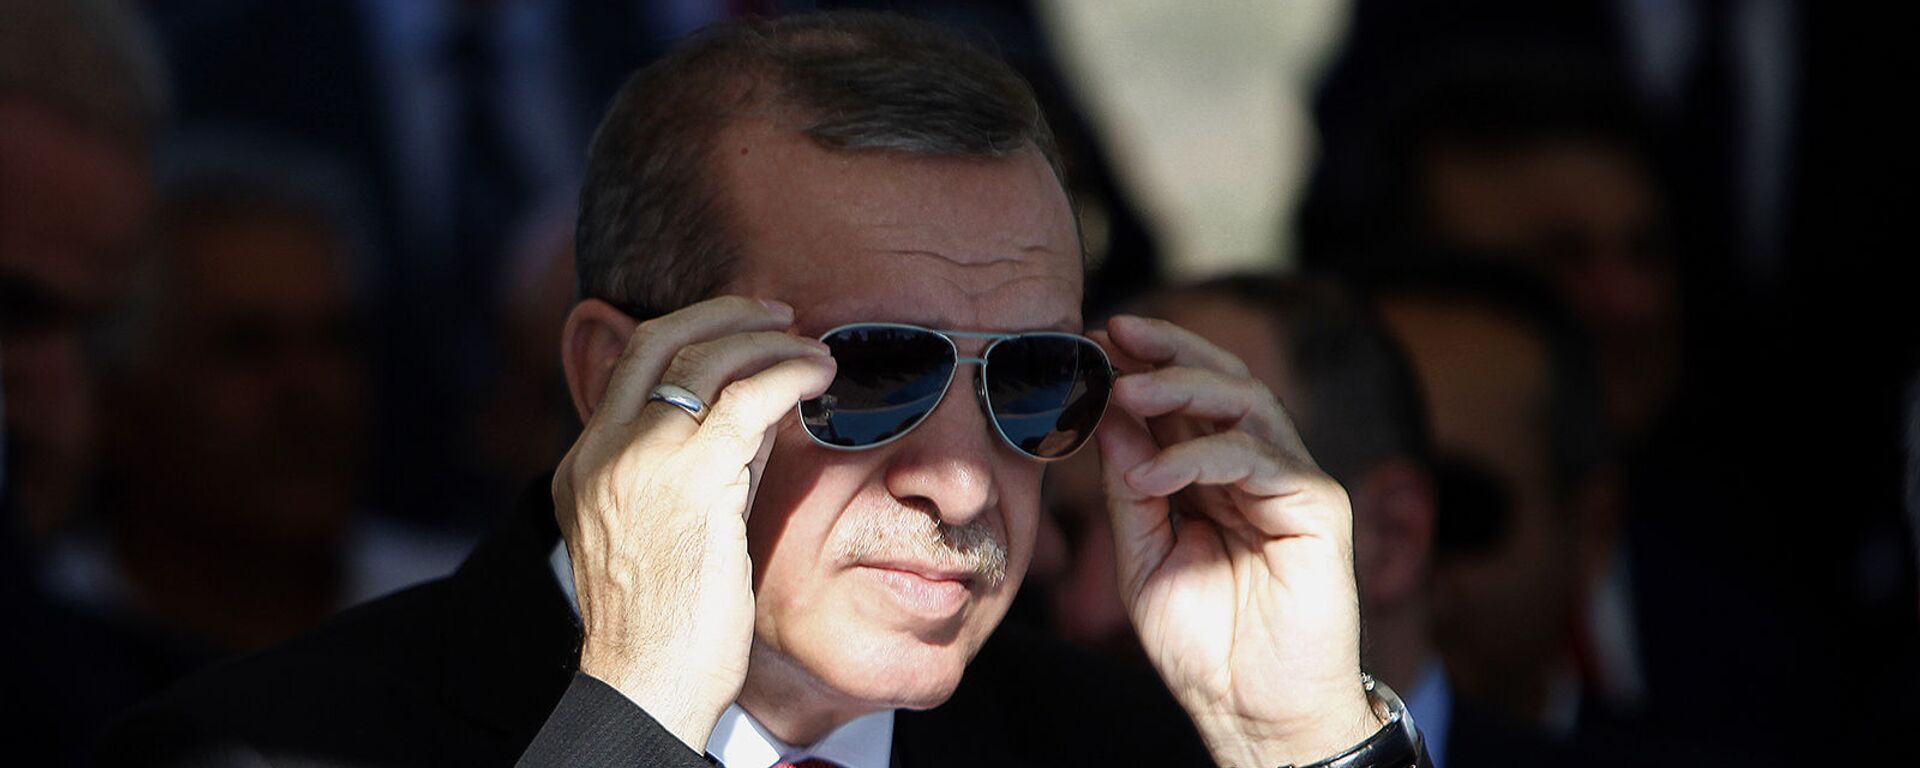 Президент Турции Реджеп Тайип Эрдоган поправляет солнцезащитные очки - Sputnik Армения, 1920, 20.07.2021